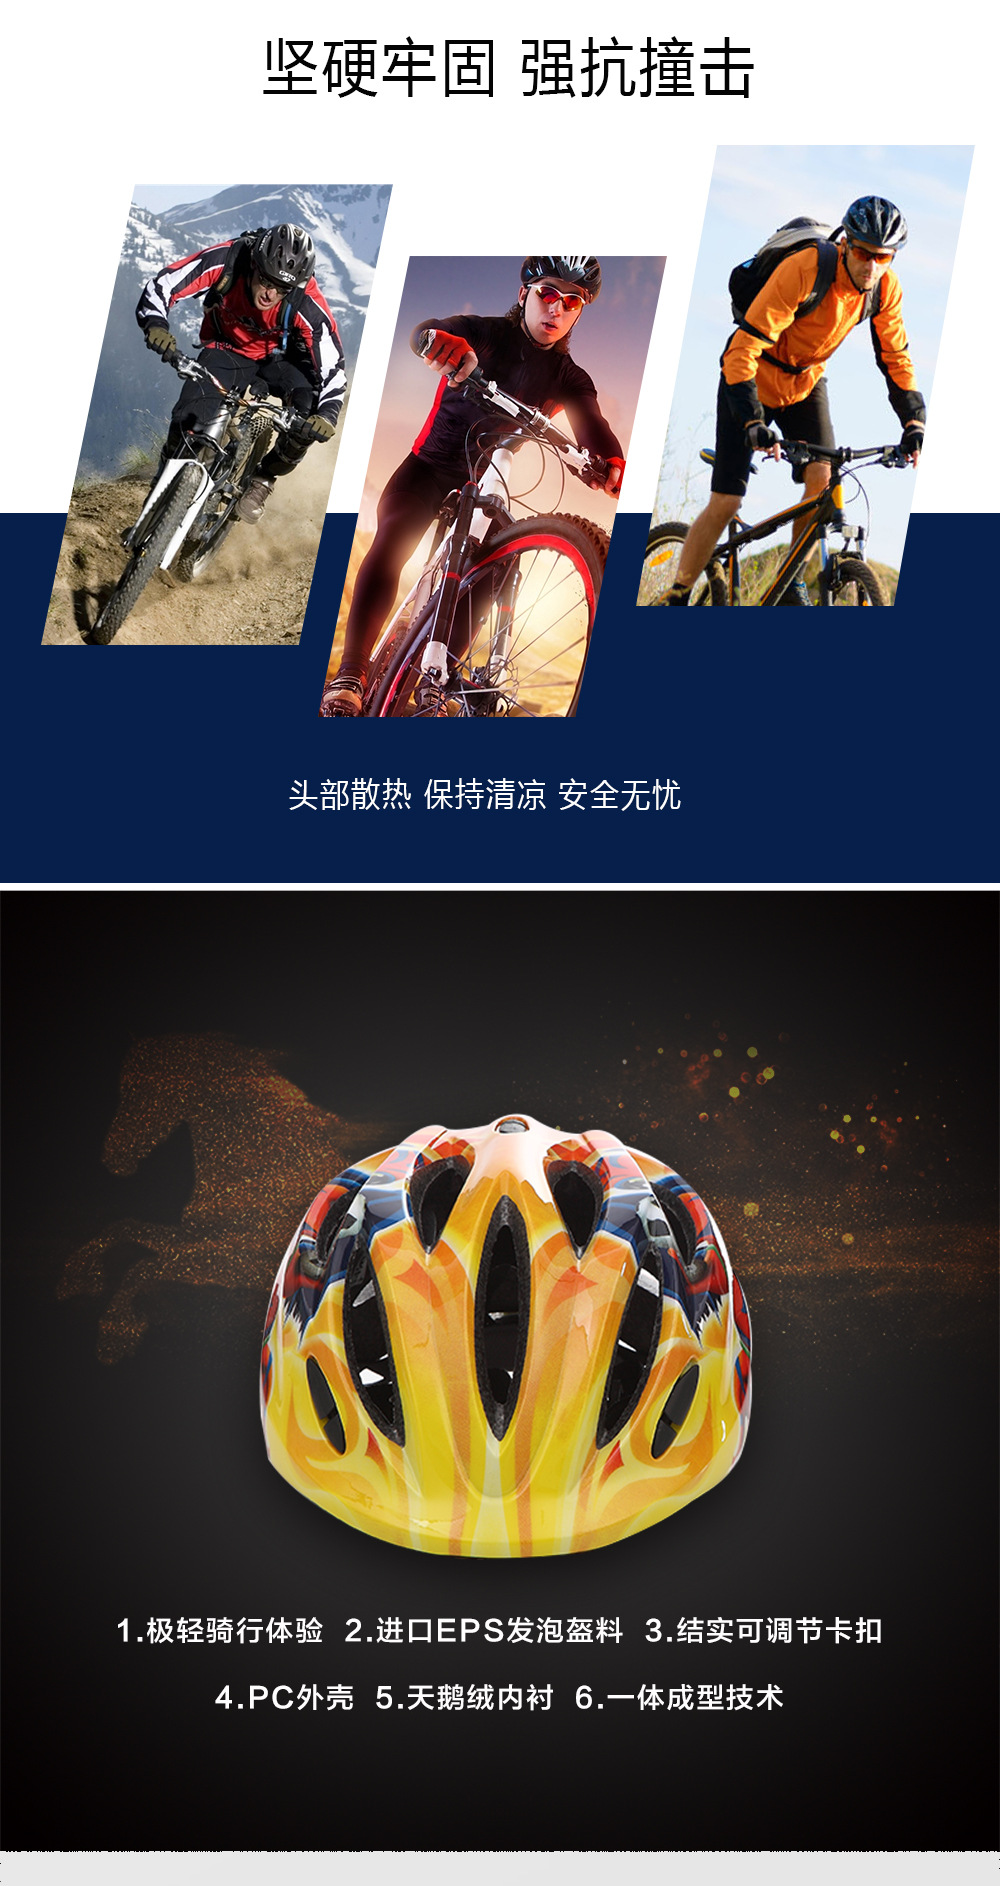 LED儿童骑行头盔 一体成型 安全头盔儿童轮滑头盔骑行头盔示例图2